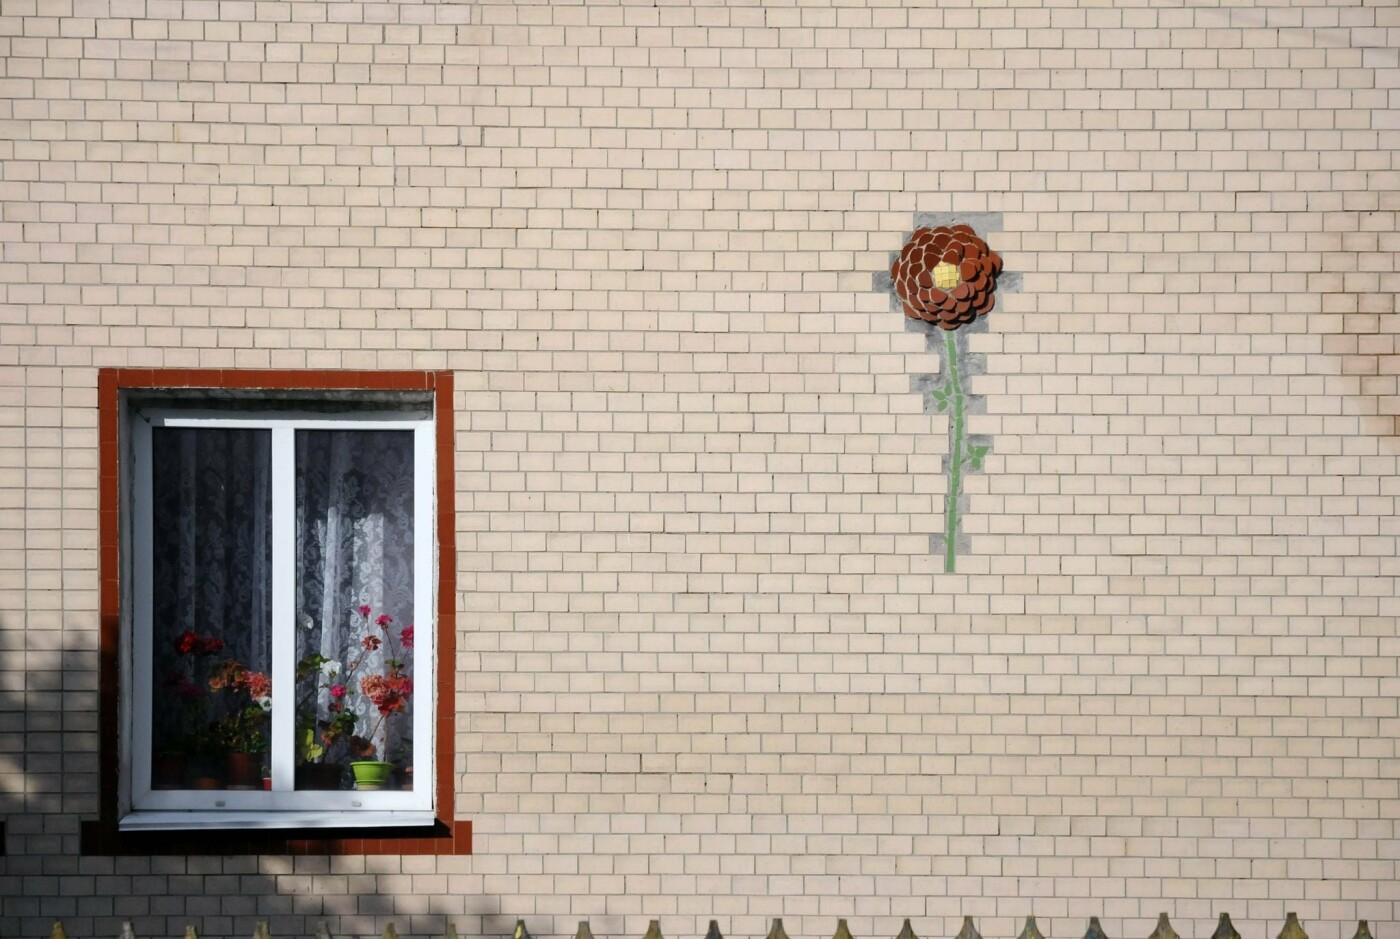 Оаза монументального мистецтва в чернігівському селі (ФОТО)